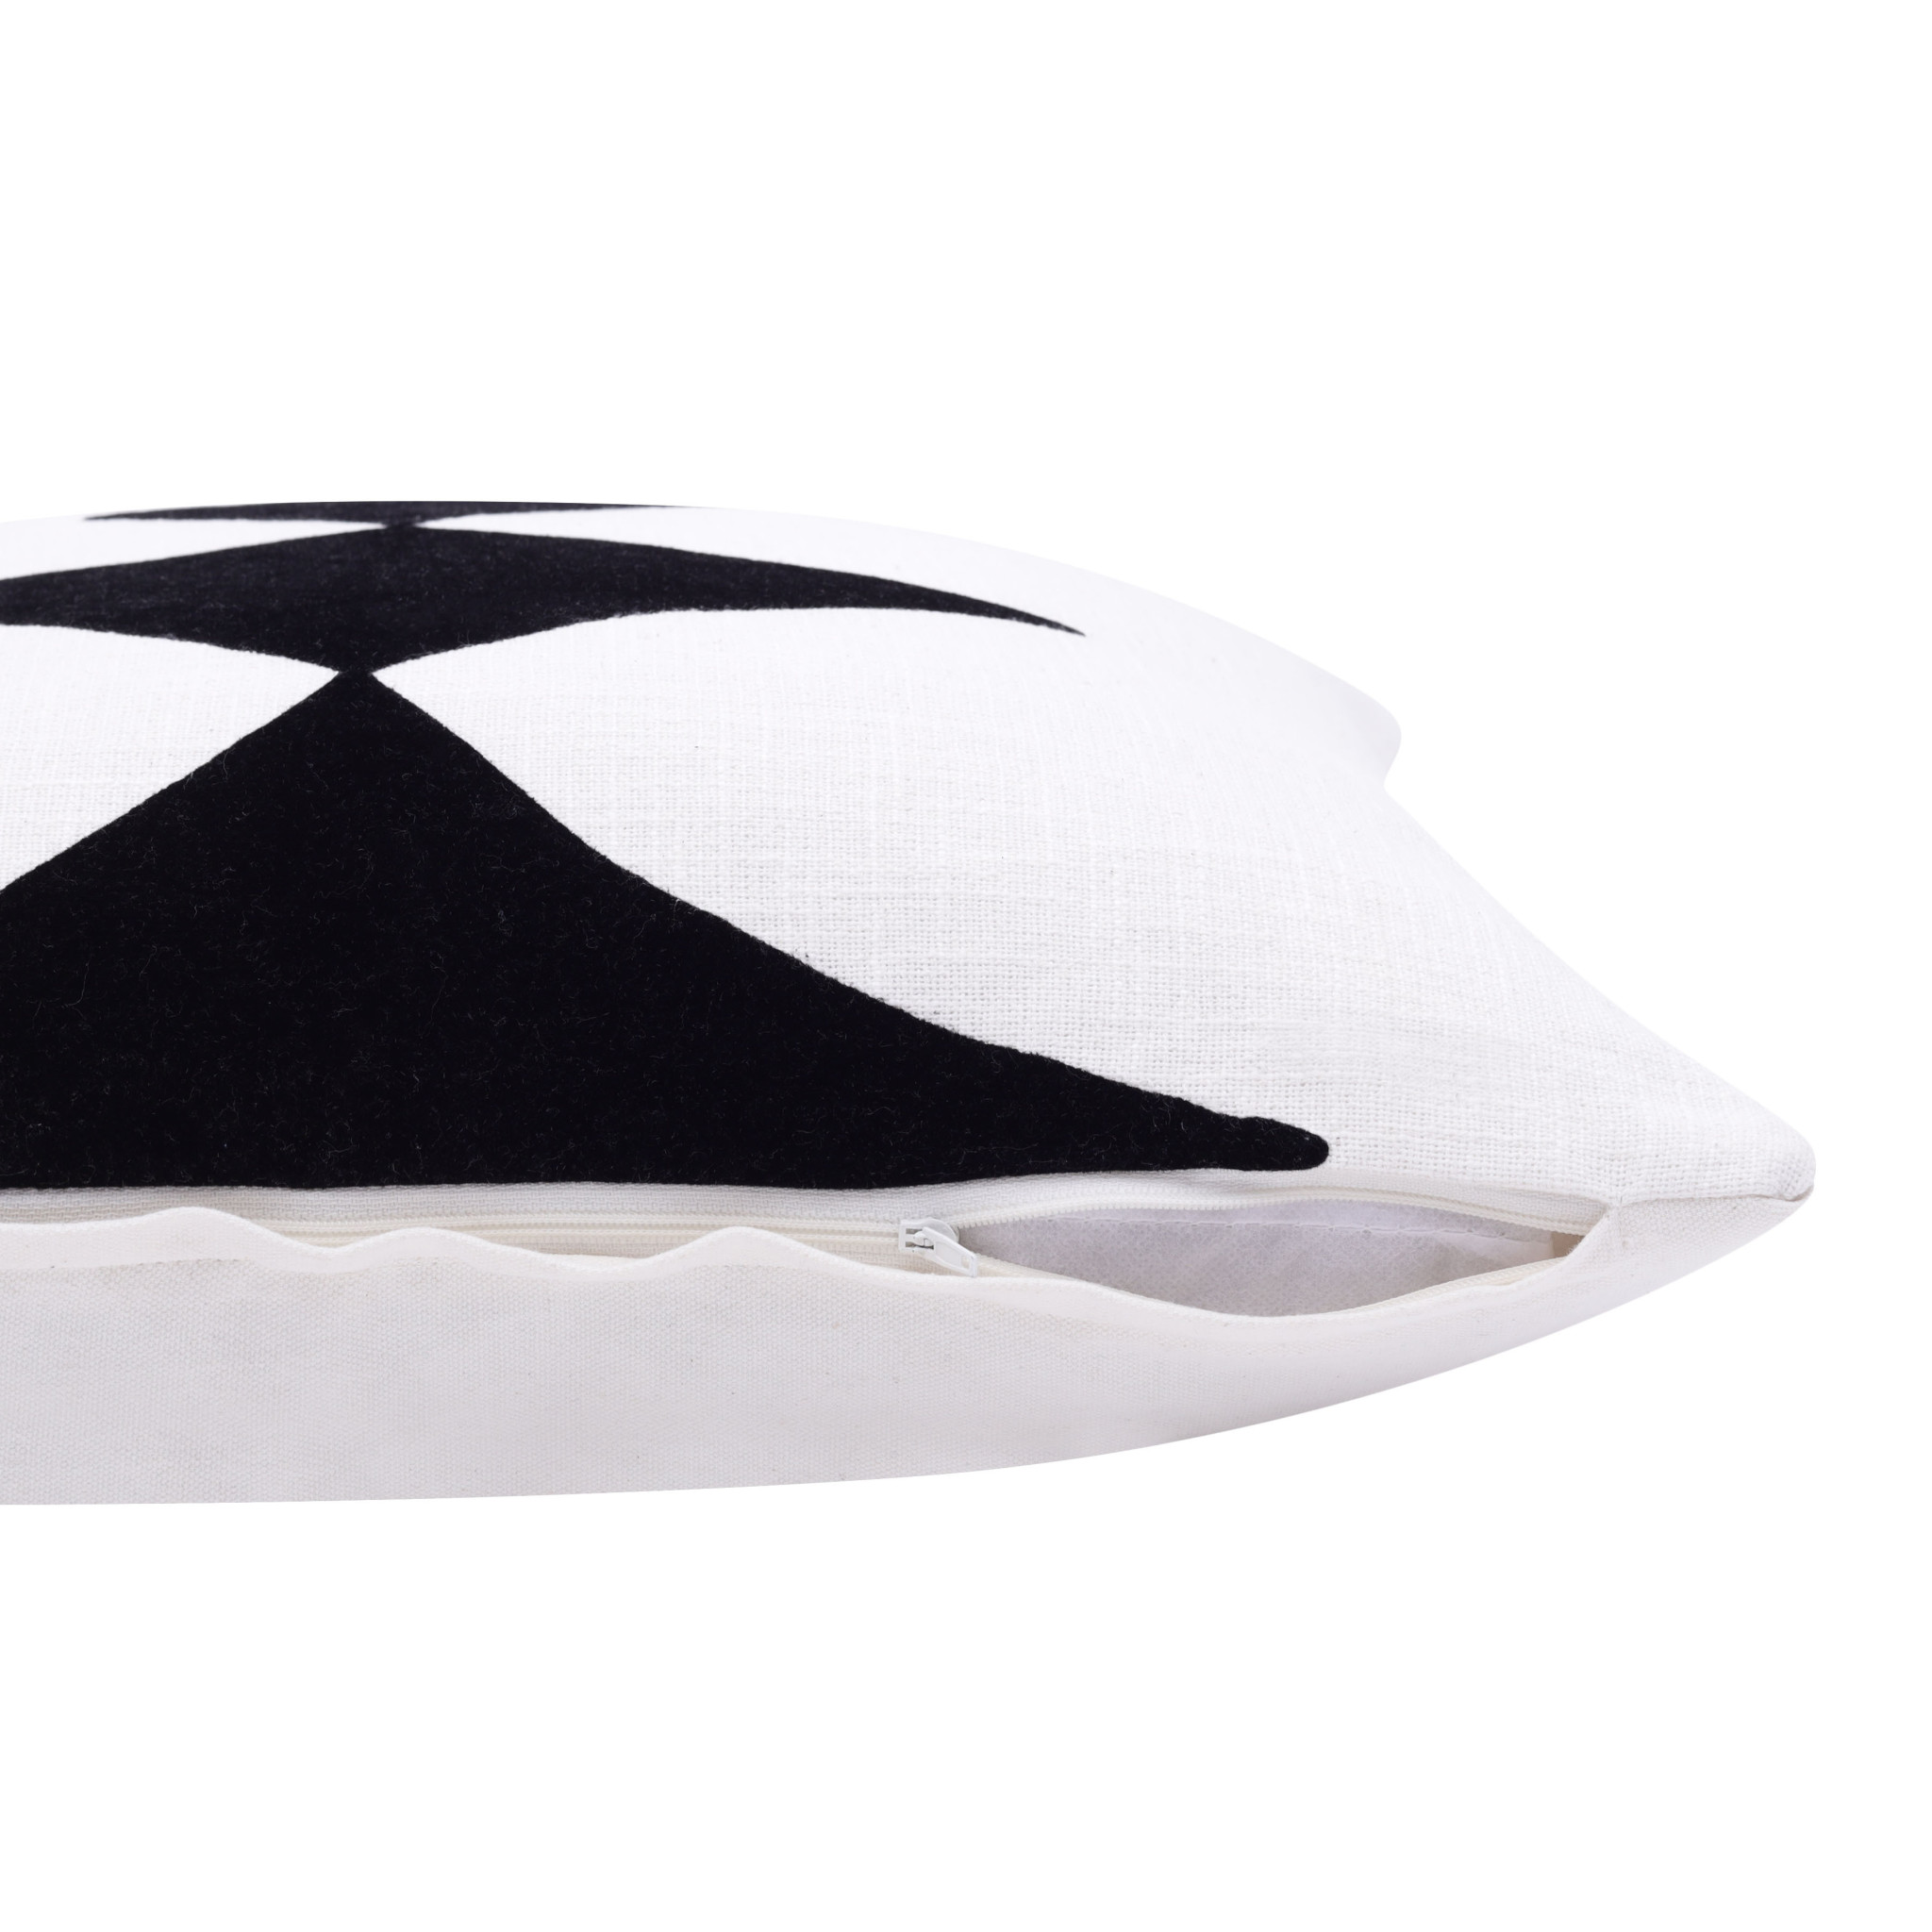 20" X 20" Black And White 100% Cotton Diamond Zippered Pillow-517052-1